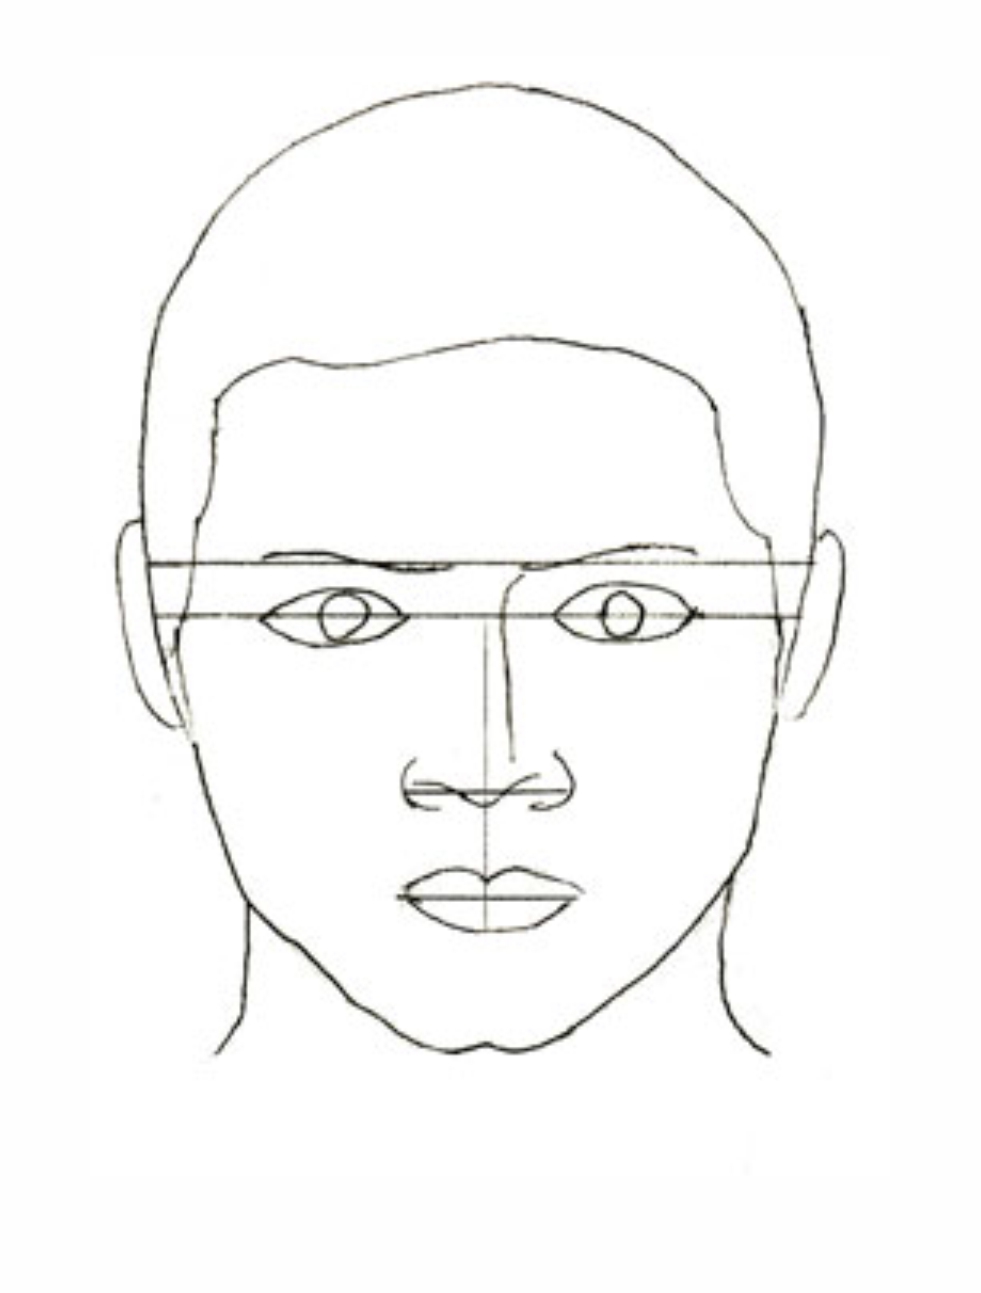 Урок рисования: Как нарисовать лицо человека поэтапно карандашом. 4 этап